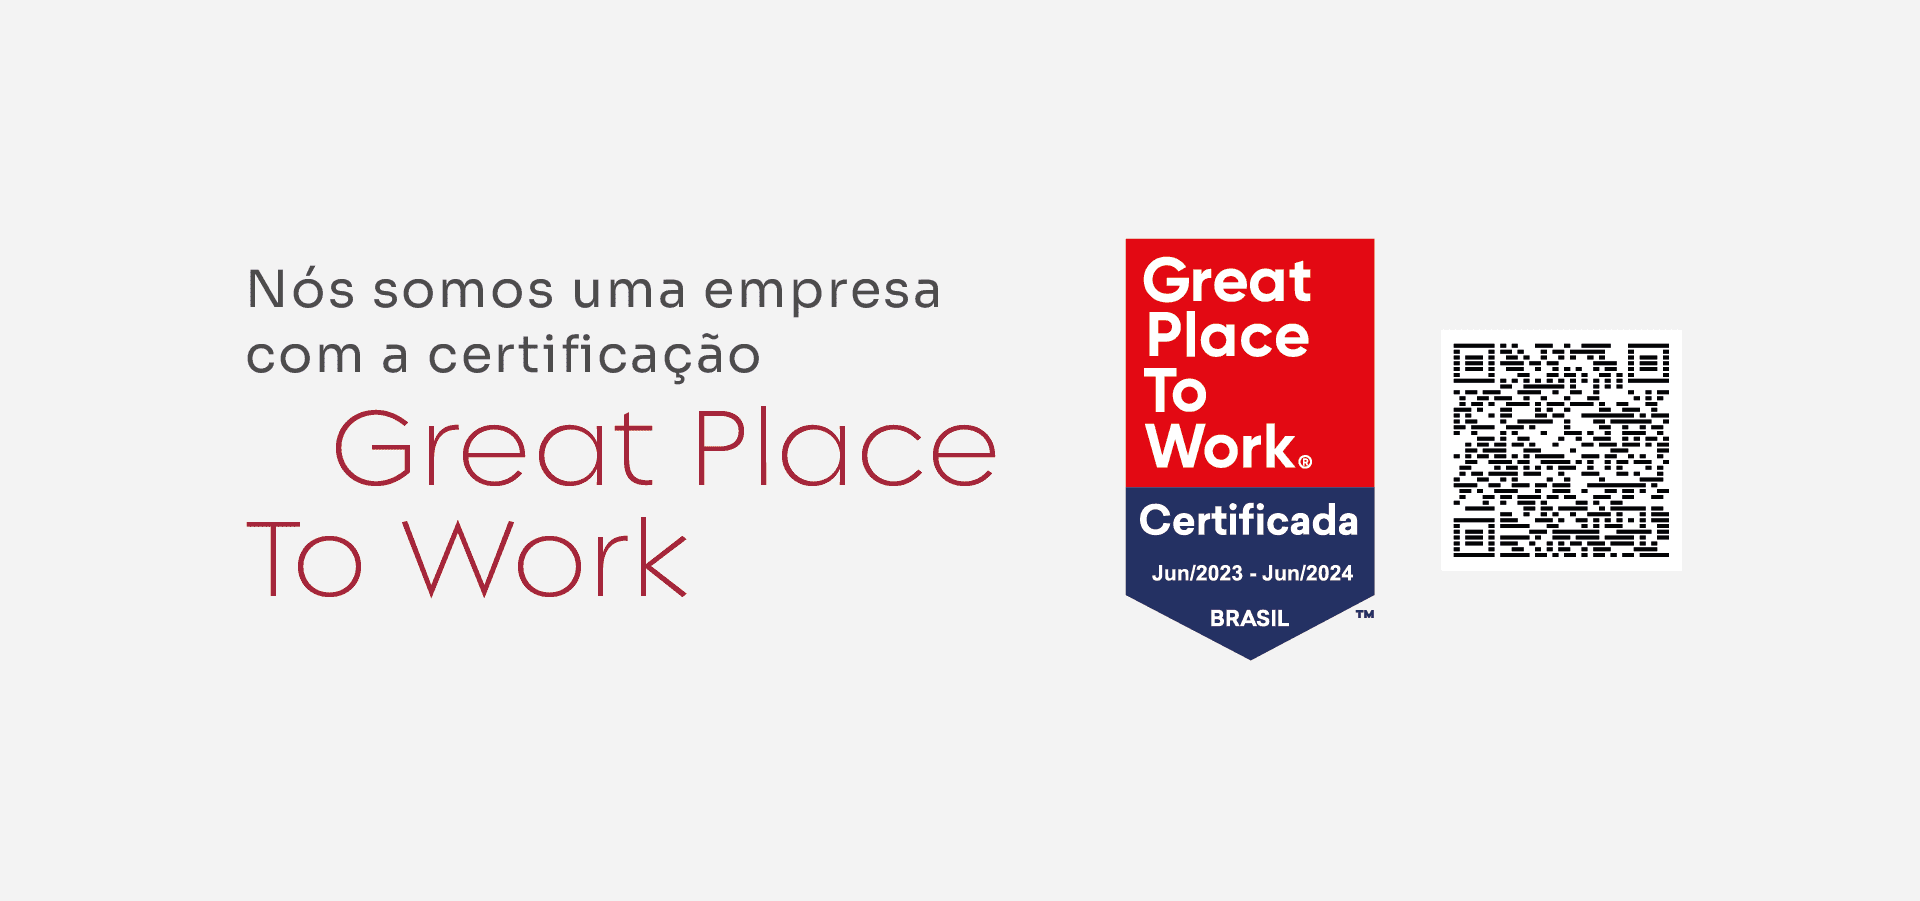 Nós somos uma empresa com a certificação Great Place To Work.